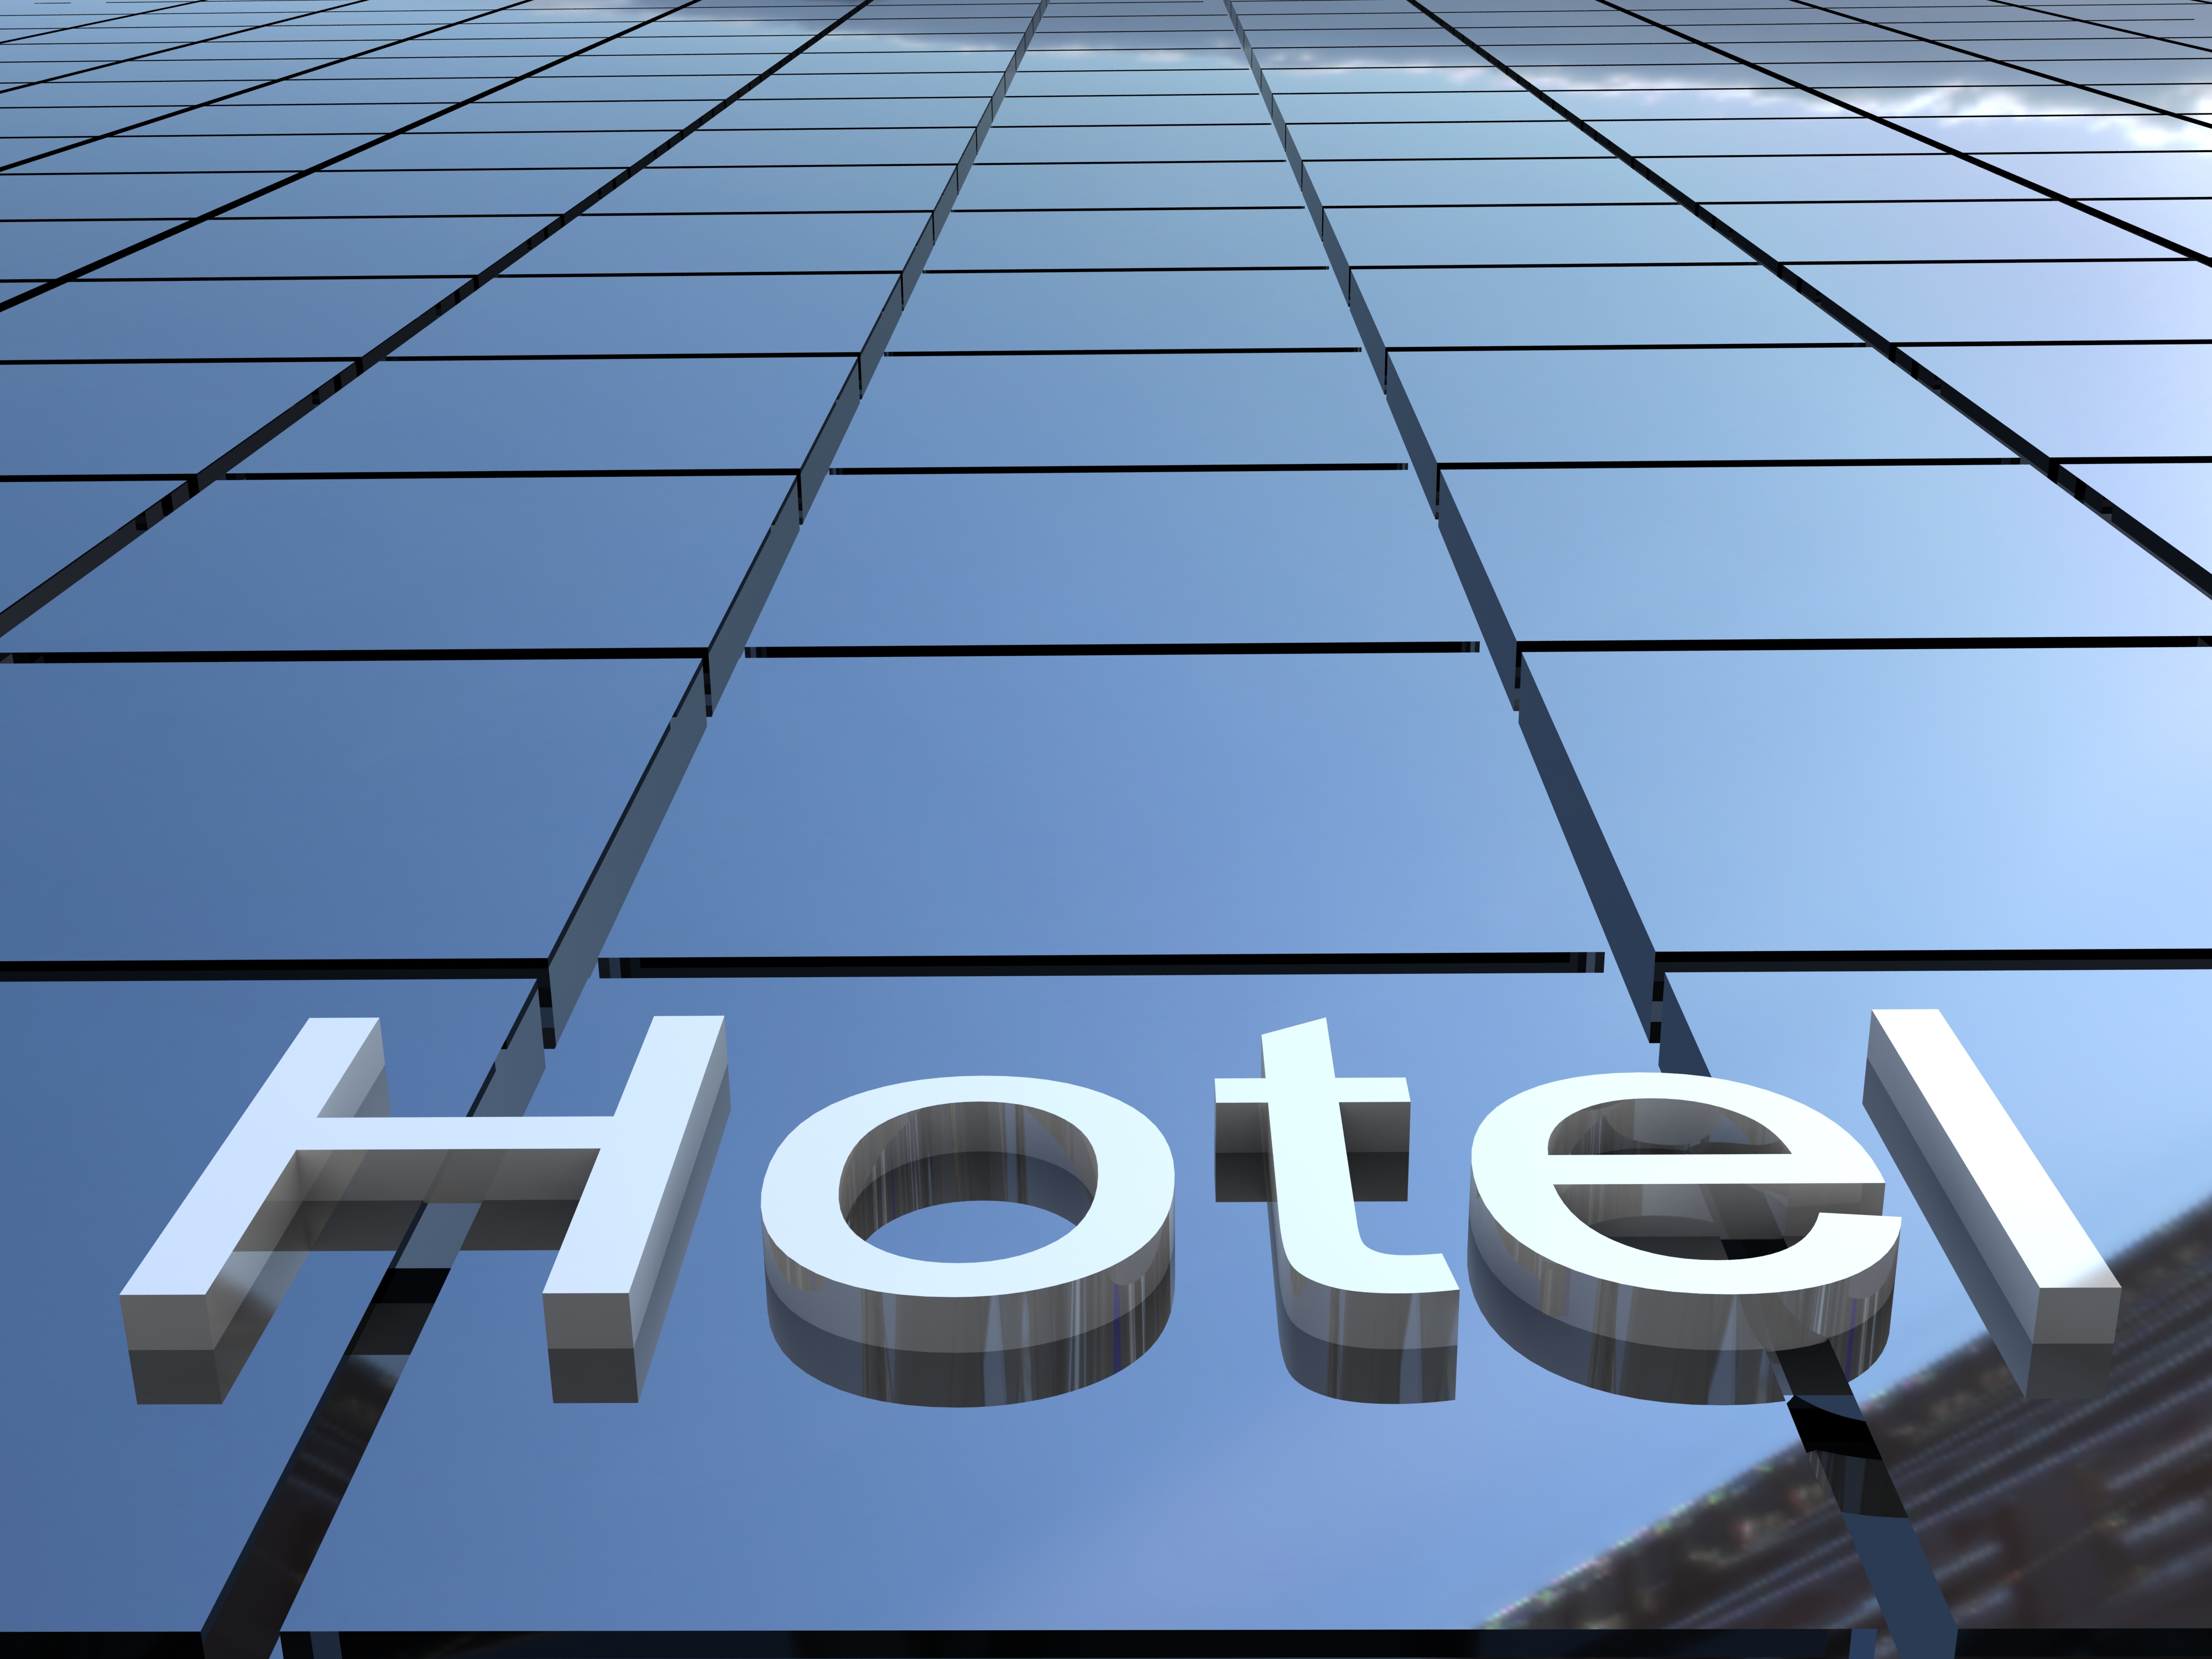 贵州金桂大酒店管理有限公司不动产、动产已流拍 起拍价9813.8万元